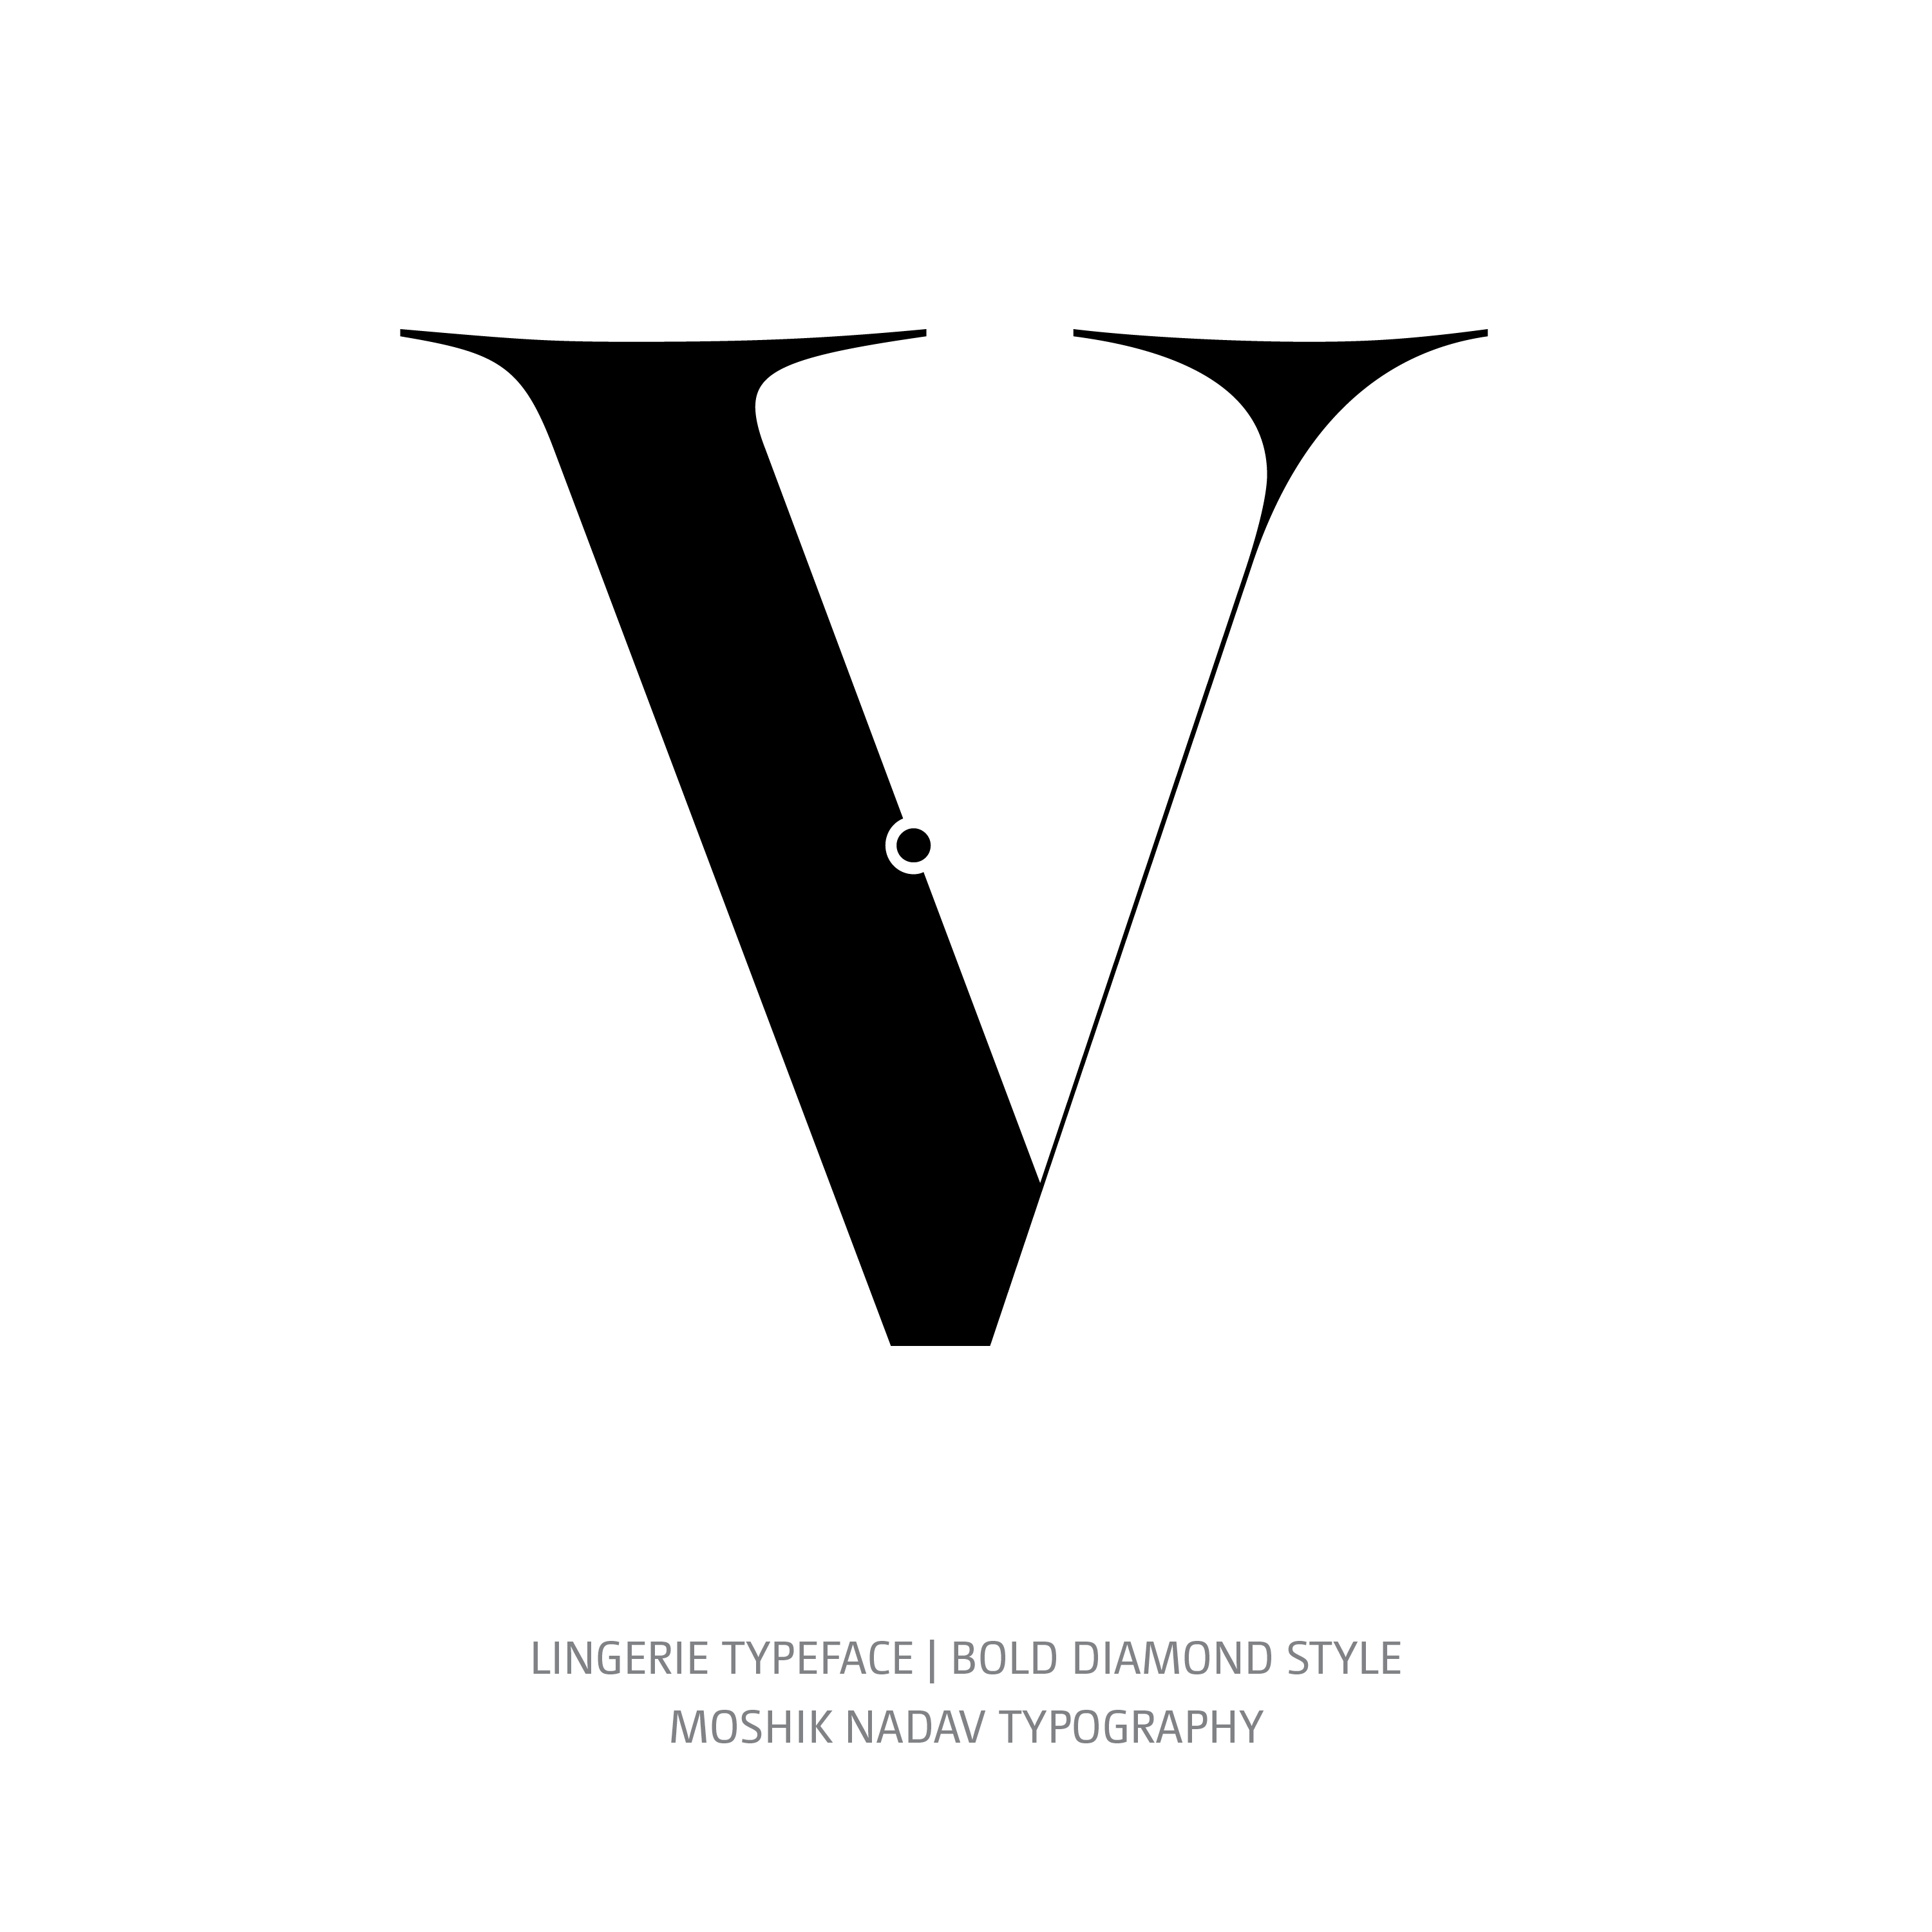 Lingerie Typeface Bold Diamond V